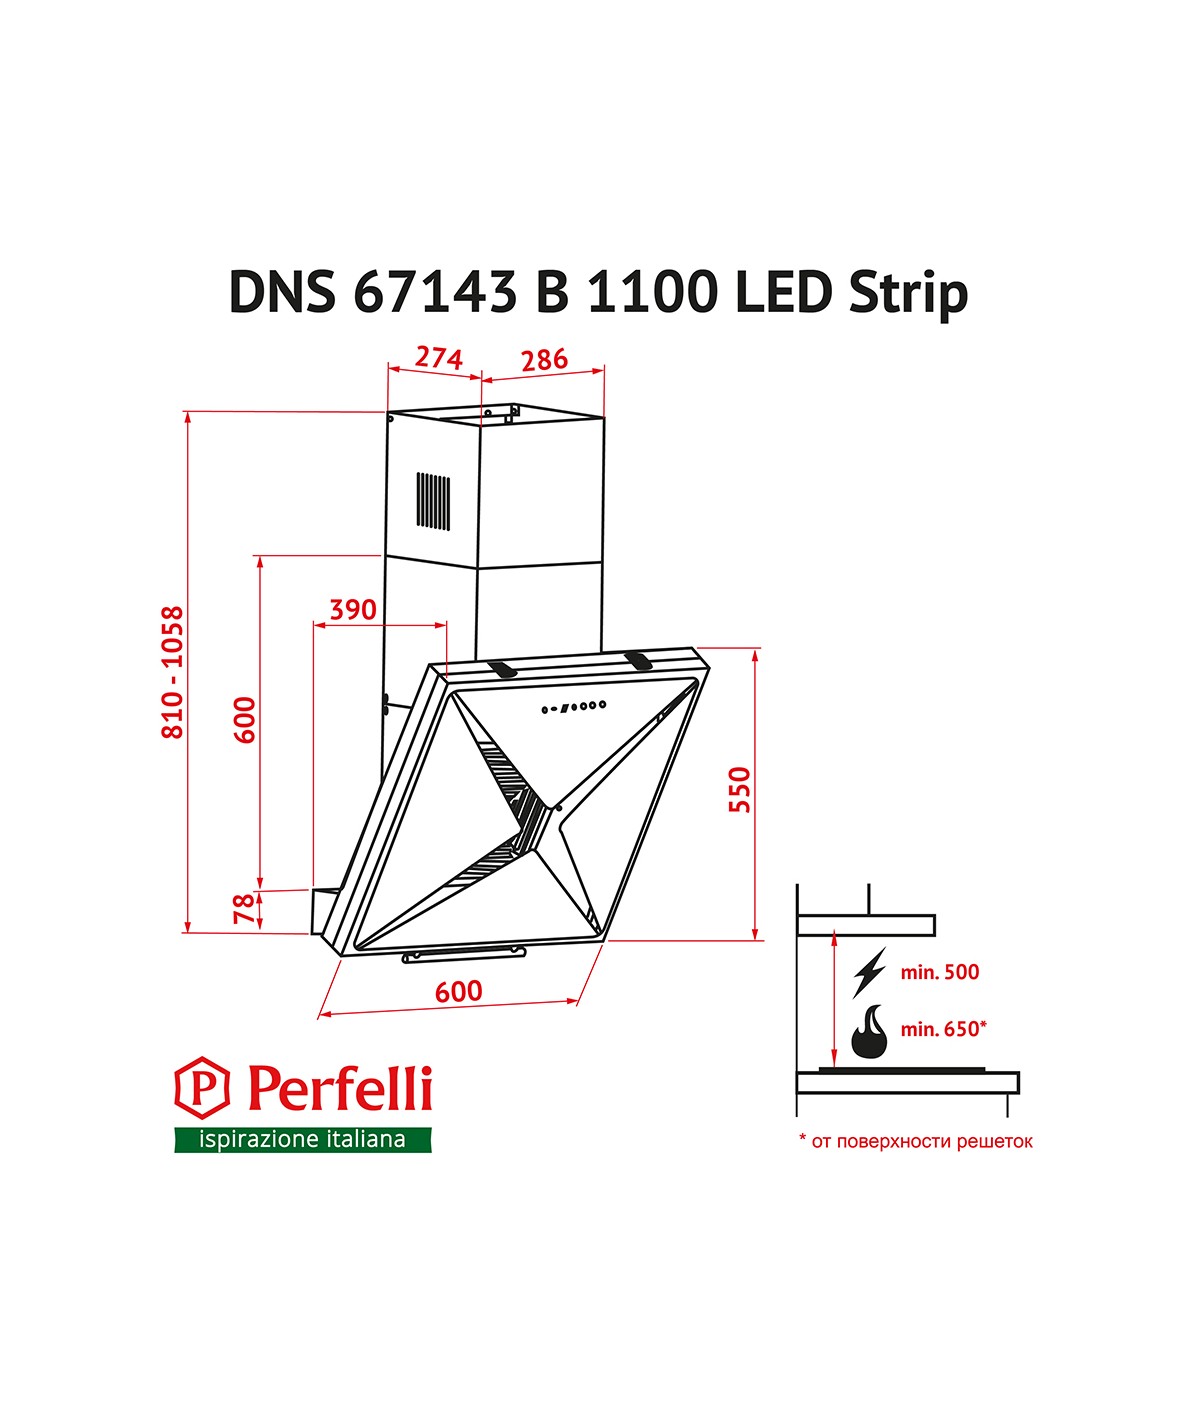 Perfelli DNS 67143 B 1100 BL LED Strip Габаритные размеры